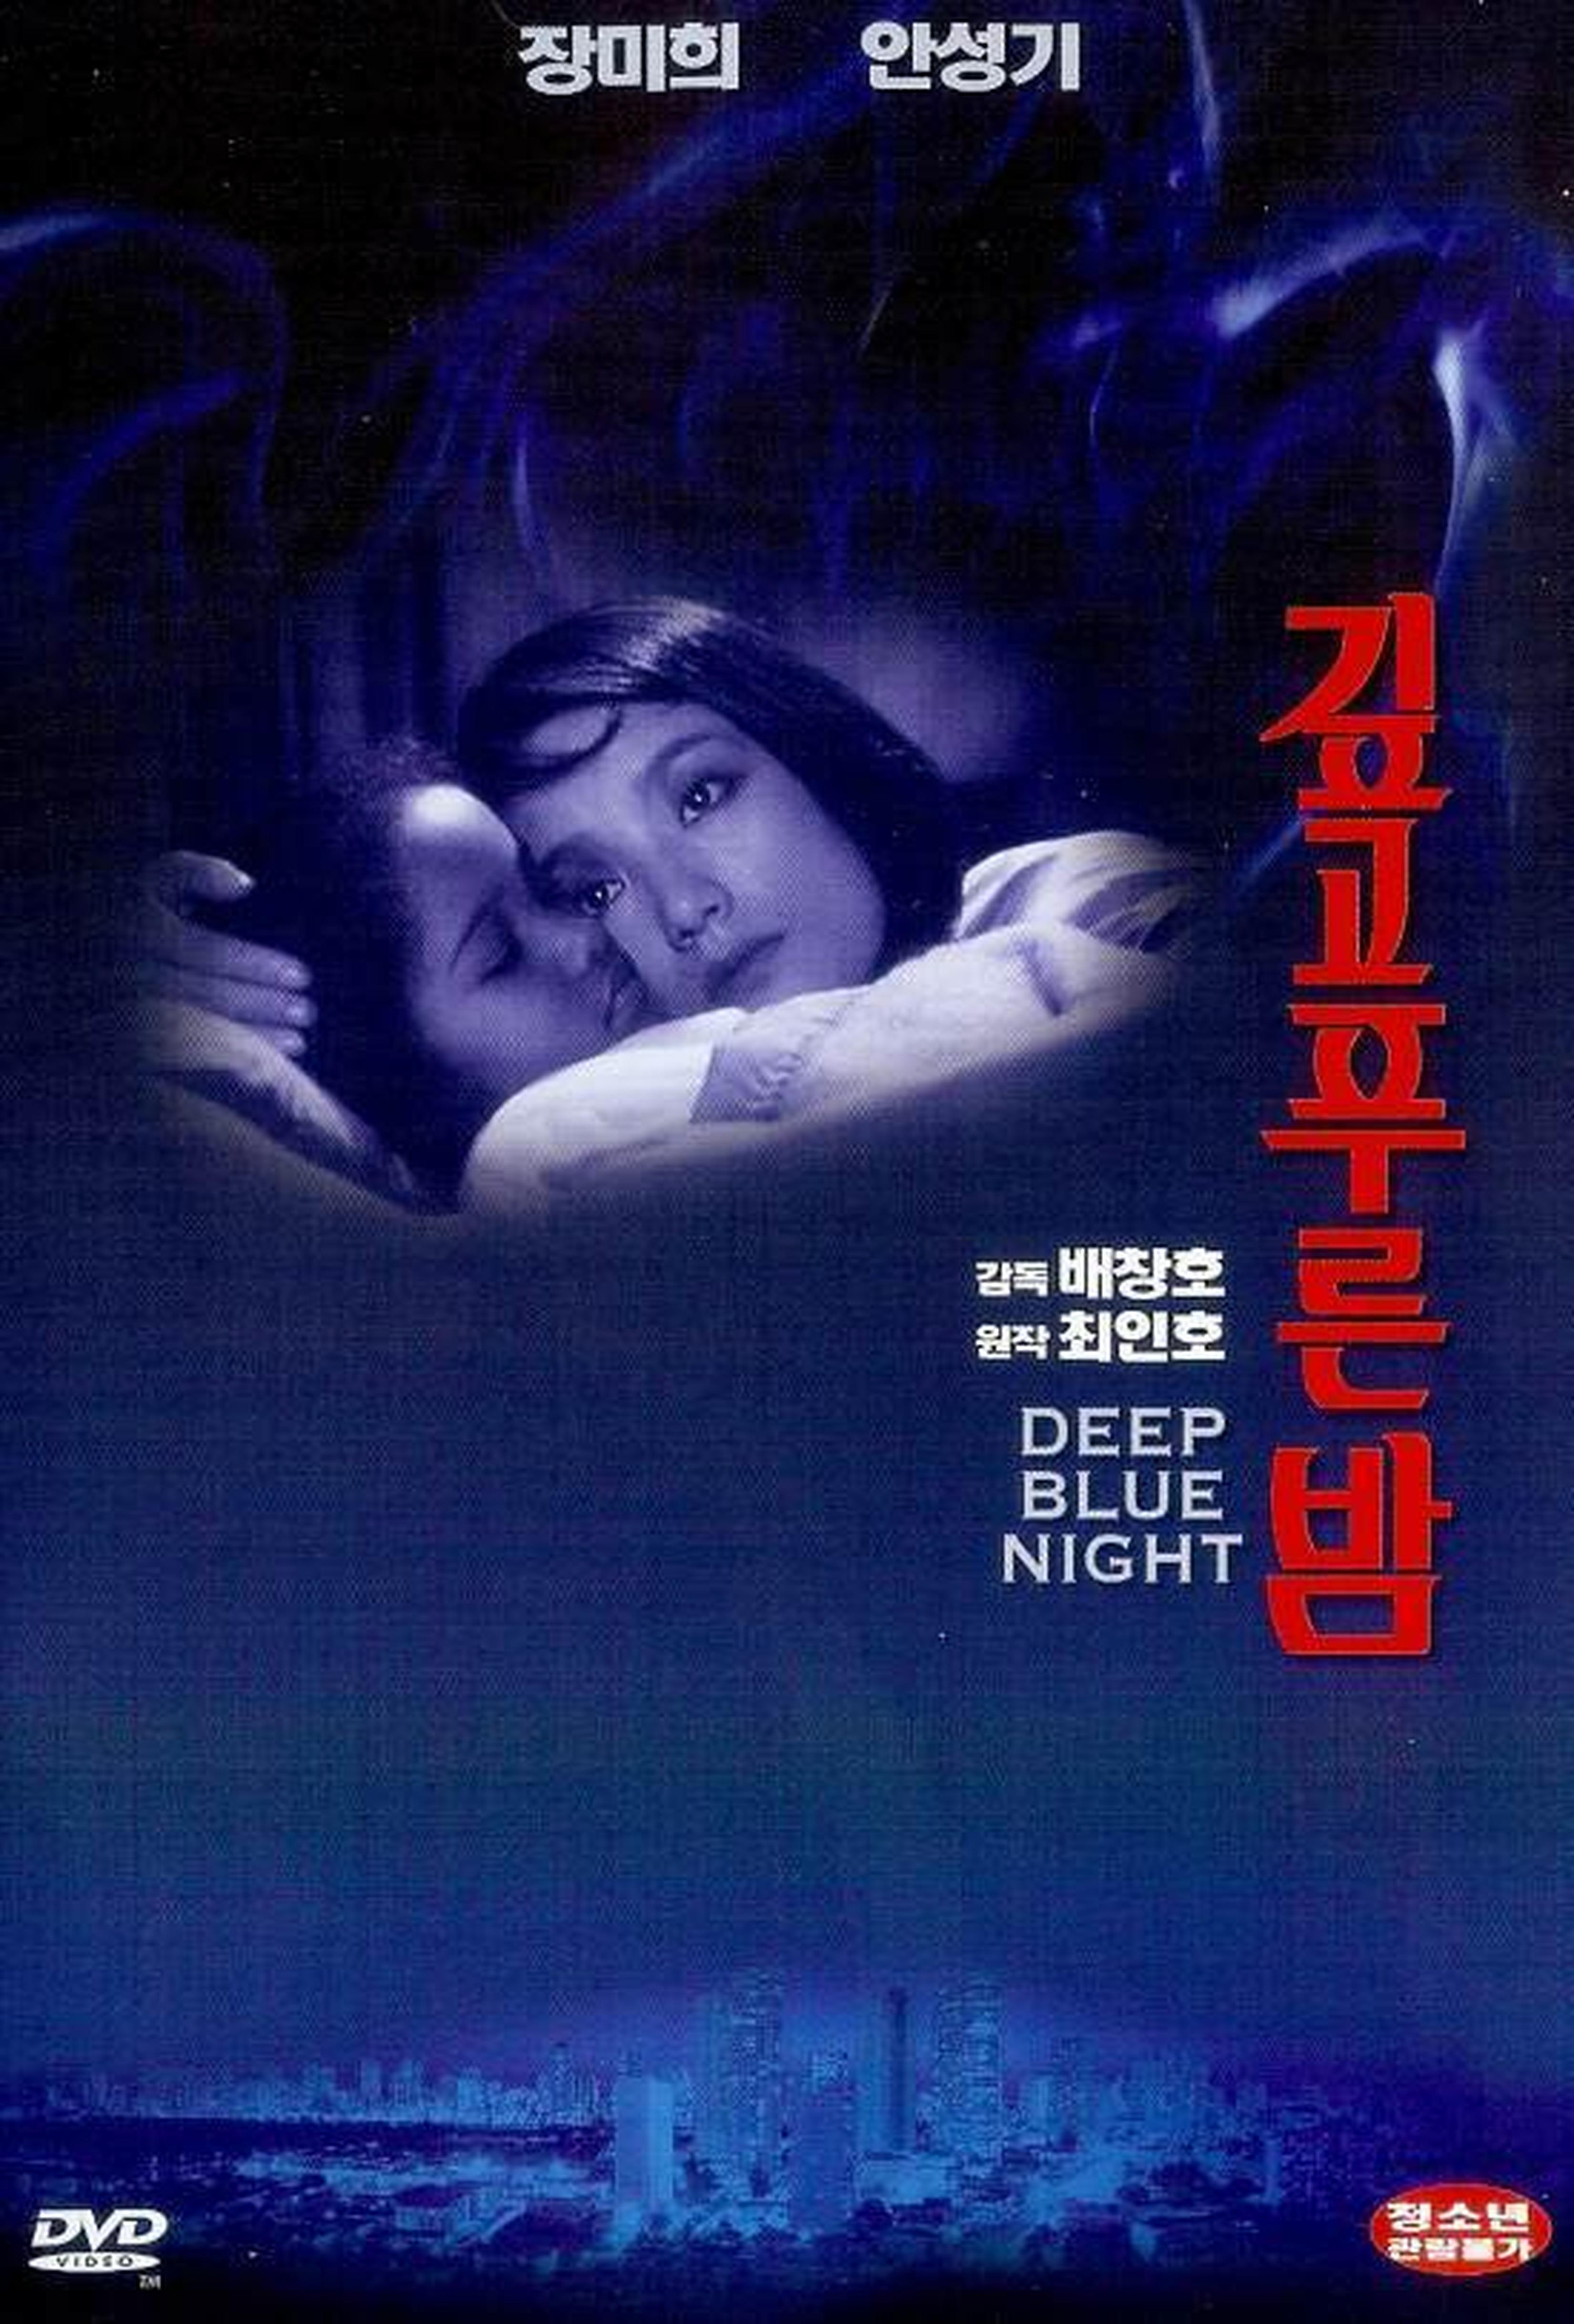 【1980-1990】《深蓝色的夜晚》(1985)导演裴昶浩。导演裴昶浩是80年代辞去外国商社工作回国从事电影创作的，是韩国80年代的重要导演之一。本片描绘了美籍韩裔移民男女之间的爱情与理想，上映后创造了当时的韩影票房纪录。当时韩国的青年一代大举移民已经成为了社会的一个相当热门的社会话题，引来各方评论及报道，该片抓住了这一热点。